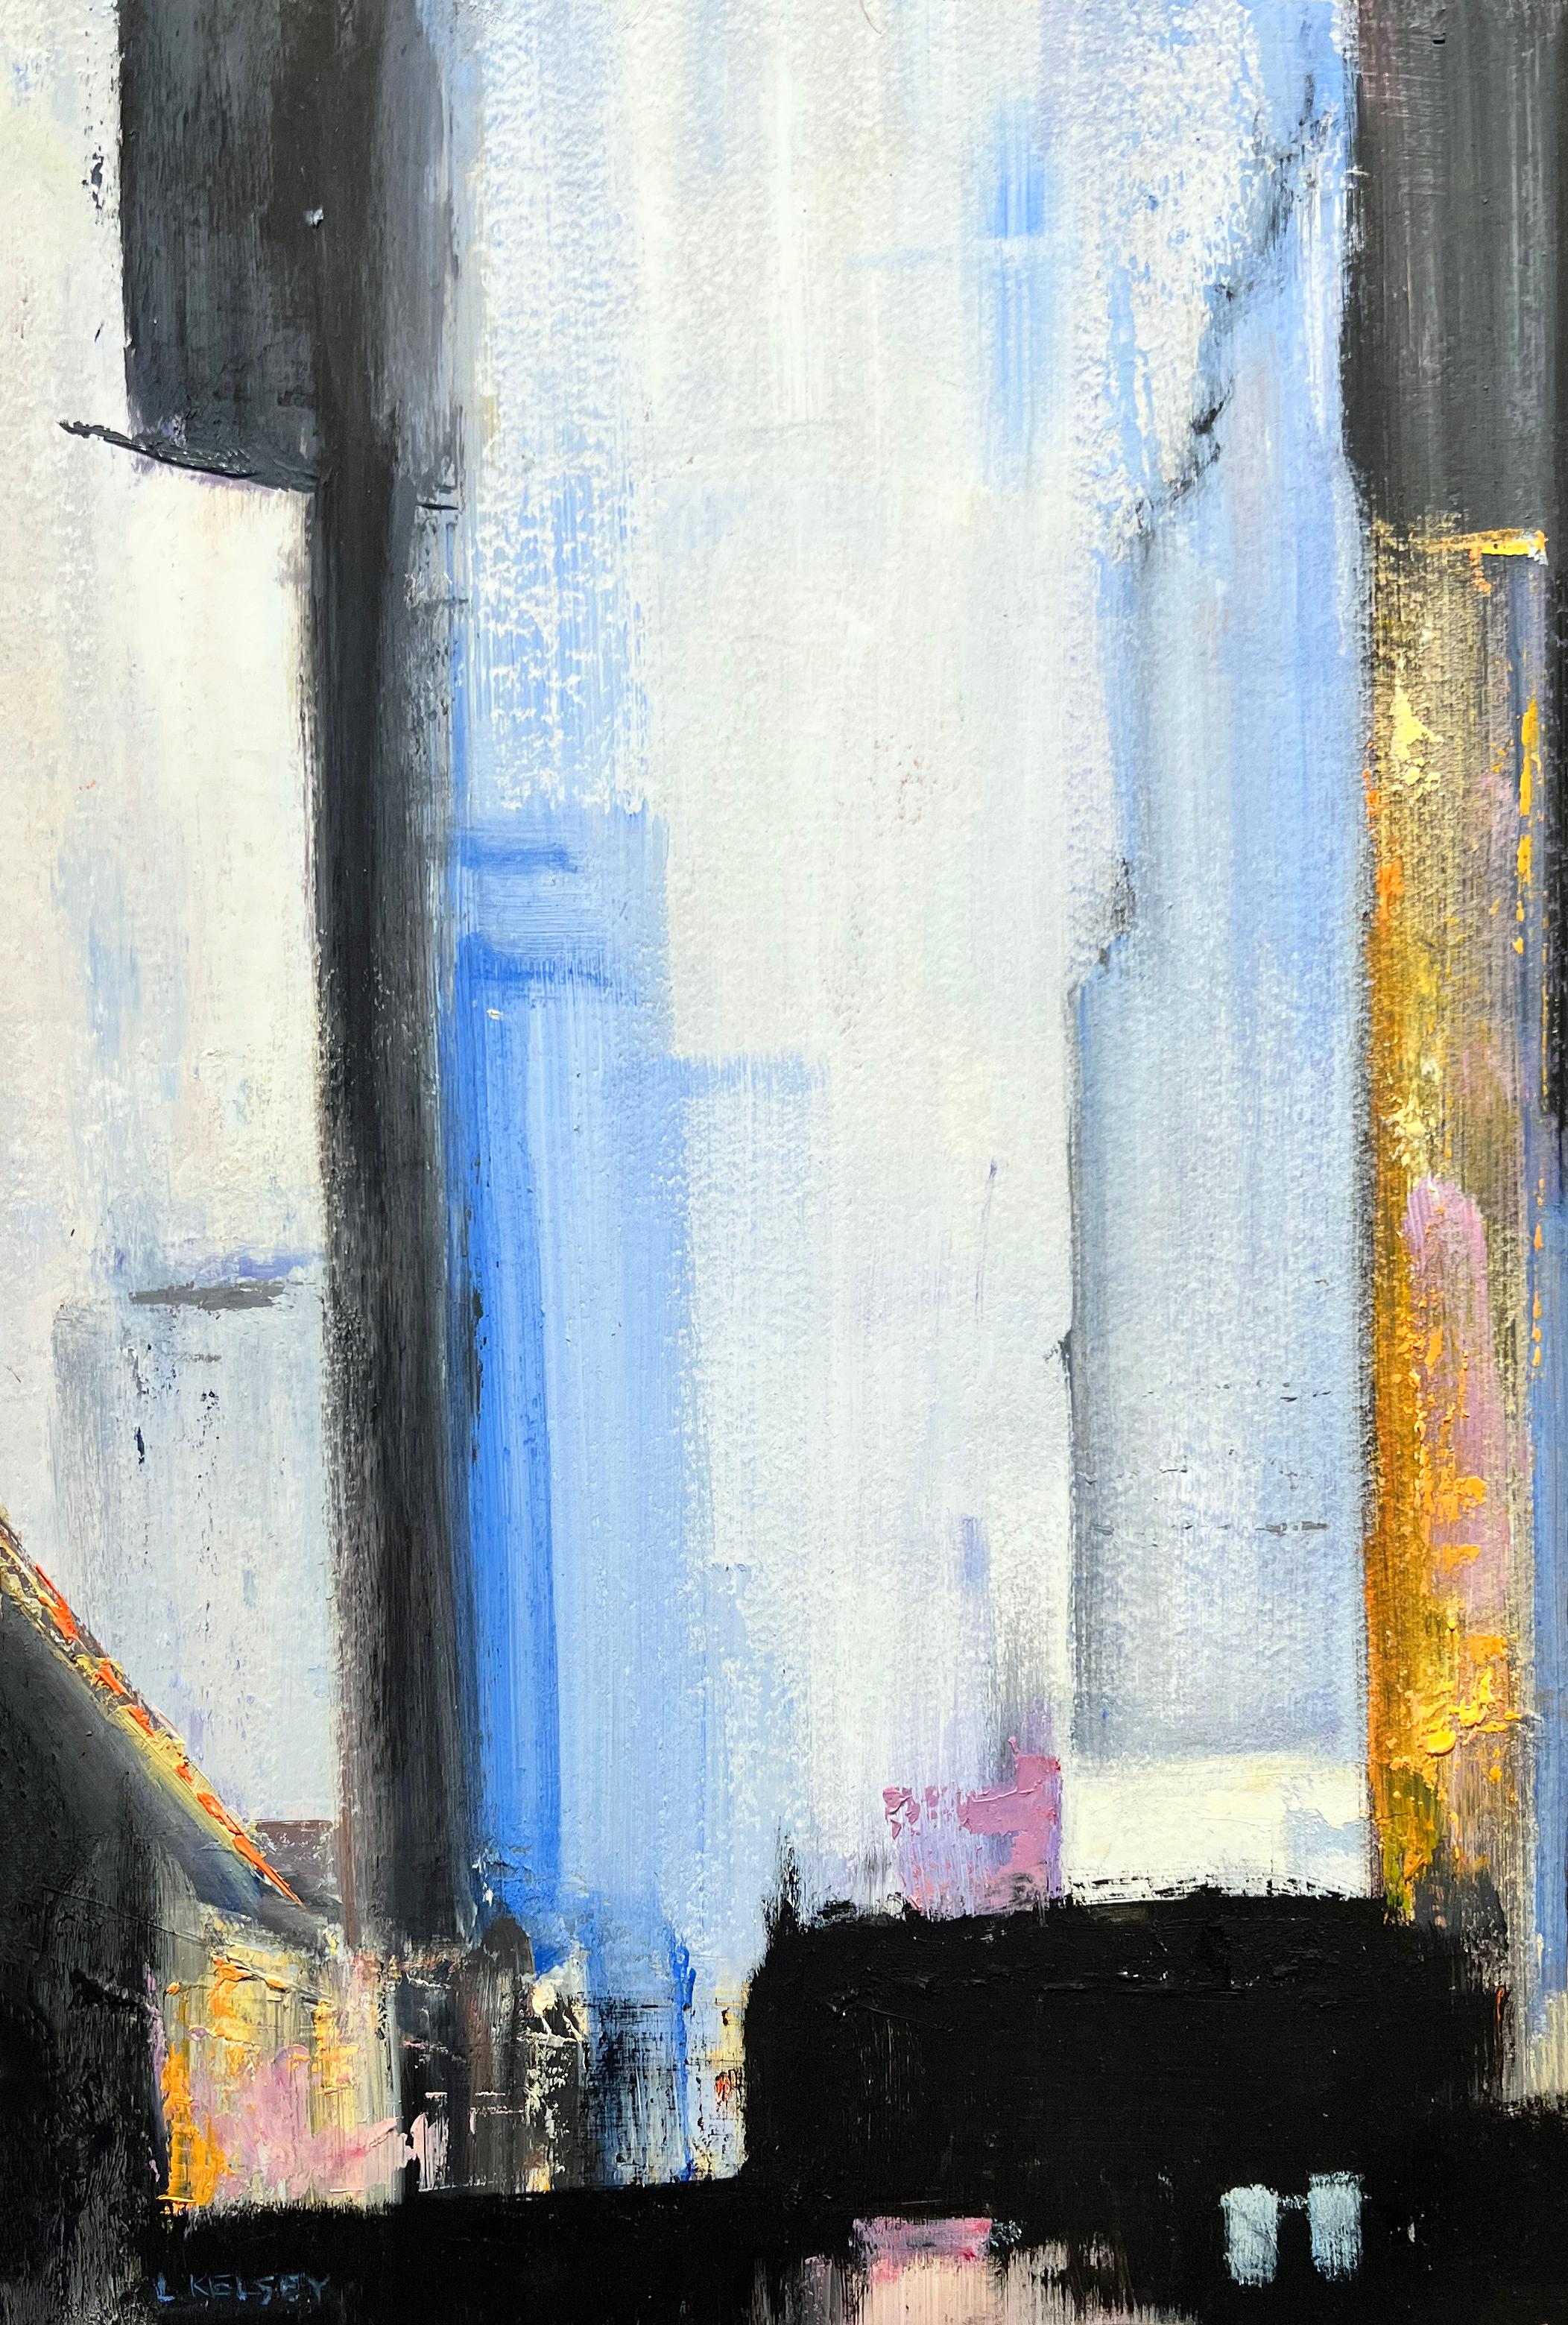 weiße Nacht" 2020 des amerikanischen Künstlers Lawrence Kelsey. Öl auf Leinwand, 16,5 x 11,25 cm. / Rahmen: 20 x 16 Zoll. Dieses impressionistische Gemälde, das eine Nachtansicht von New York City zeigt, enthält satte Farben in Blau, Hellblau,